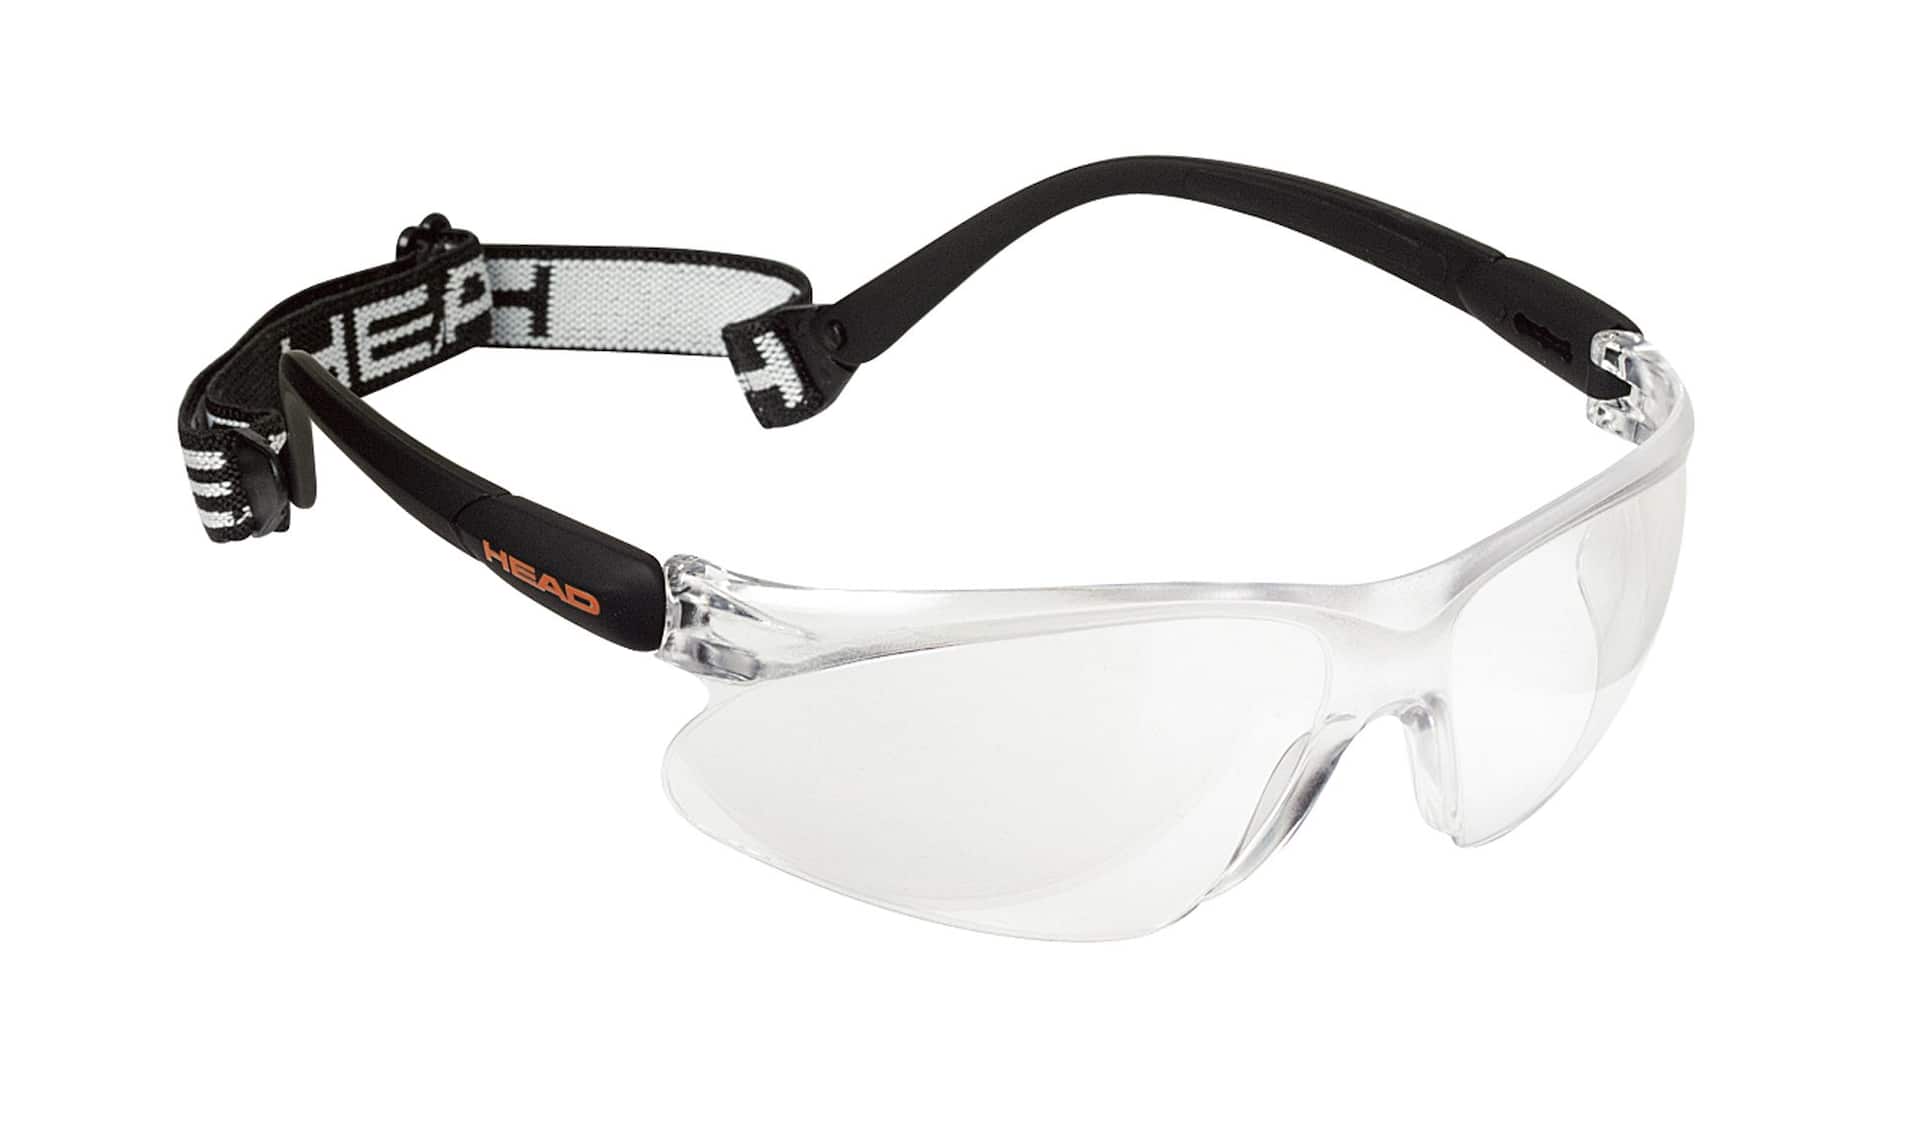 Magasinez en ligne Accessoires et produits pour les lunettes Gadgets